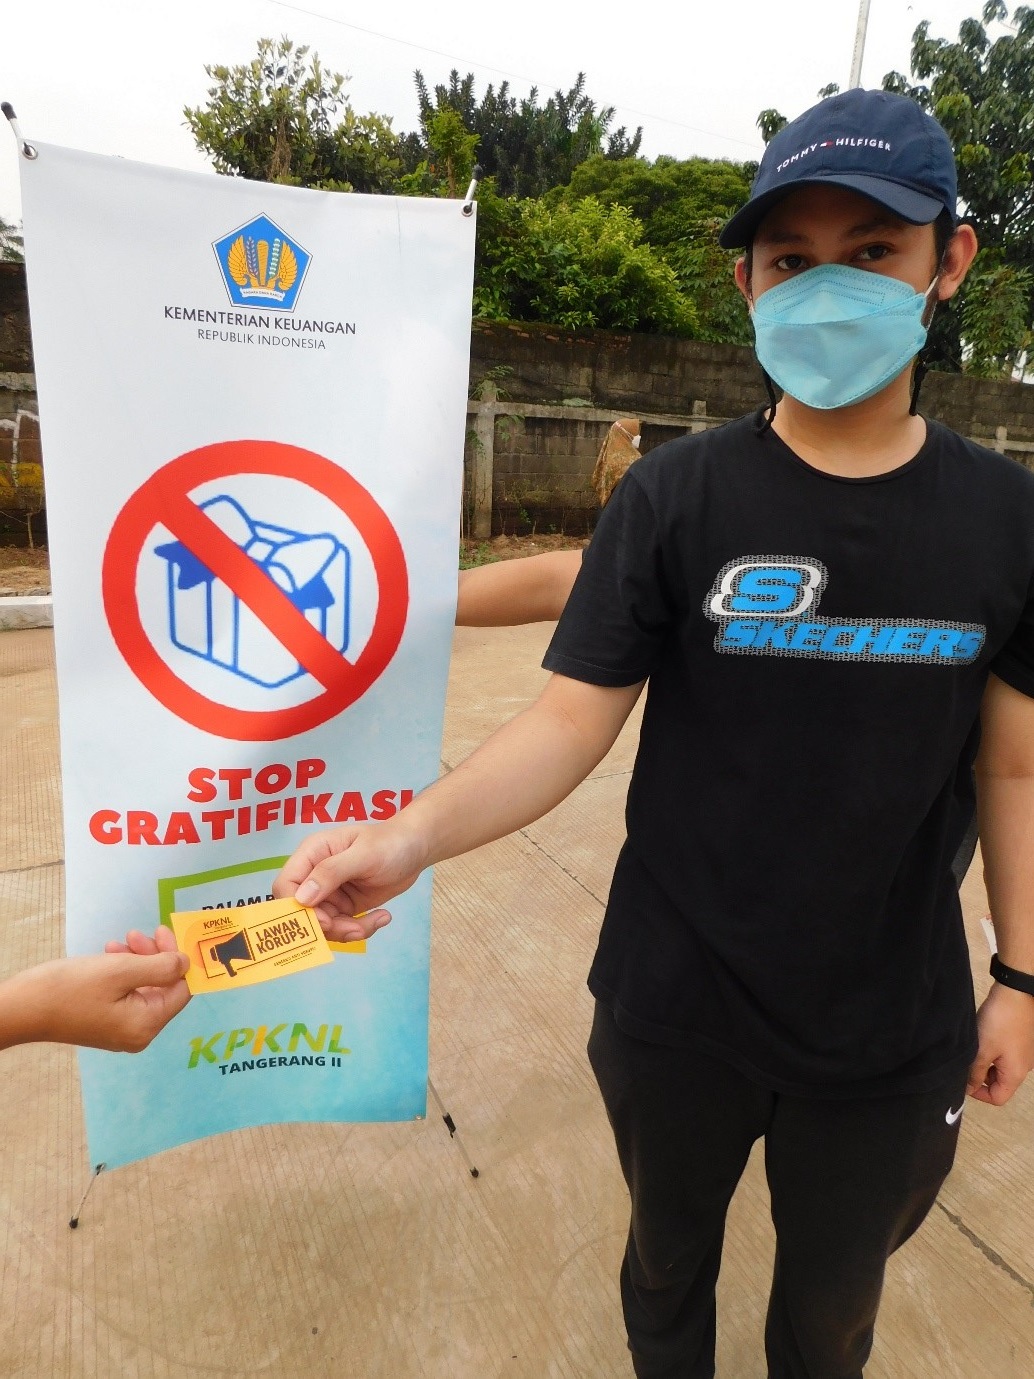 Berkomitmen menuju ZI-WBBM, KPKNL Tangerang II Lakukan Kampanye Anti Gratifikasi